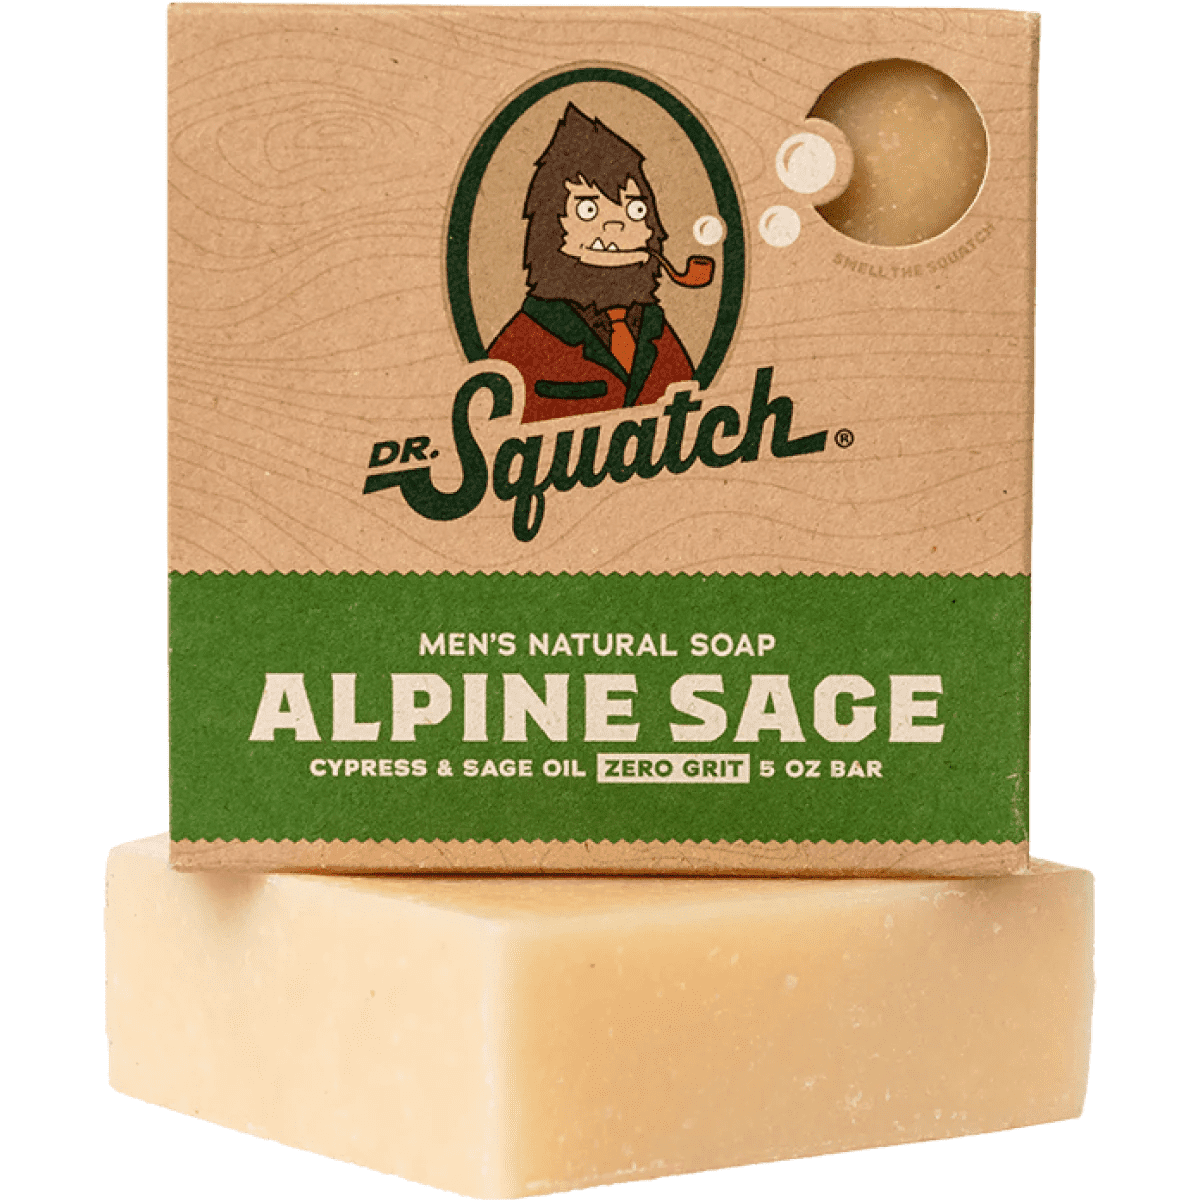 Dr. Squatch Alpine Sage Men's Natural Bar Soap 5oz Lot Of 5 Bars New Sealed